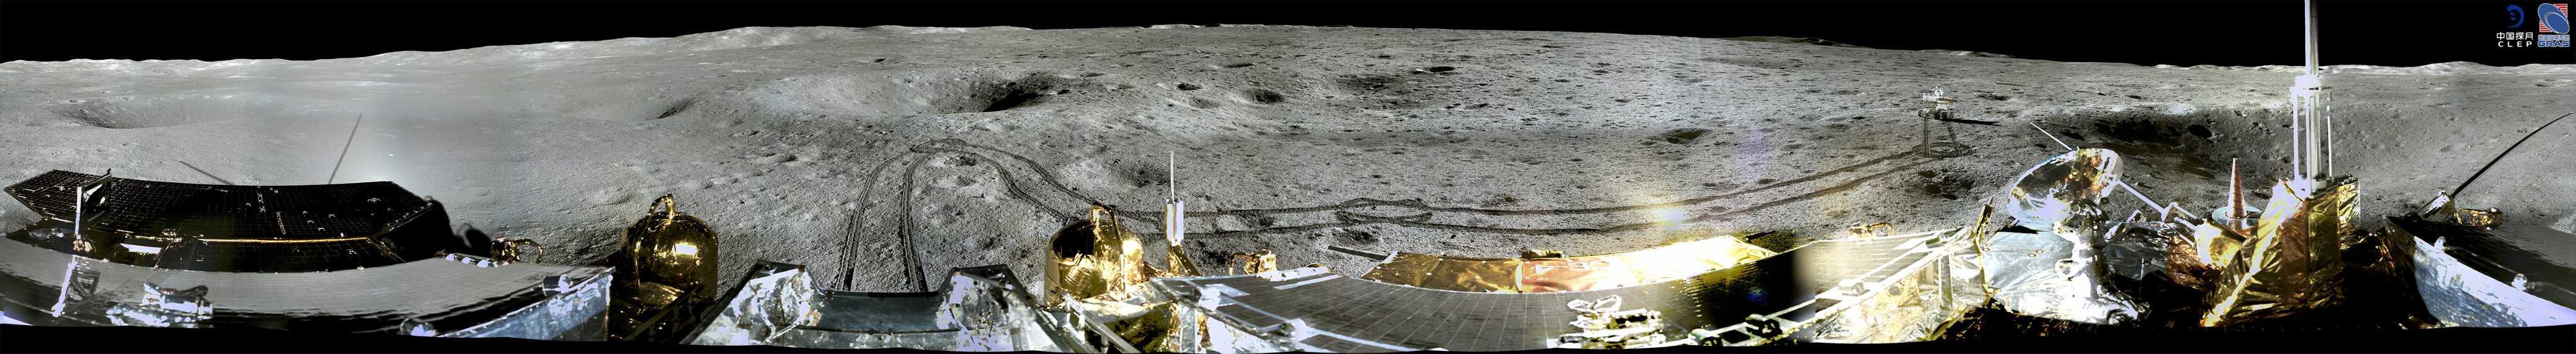 Chang'e 4 - Mission sur la face cachée de la Lune (rover Yutu 2) - Page 15 1_jfi180